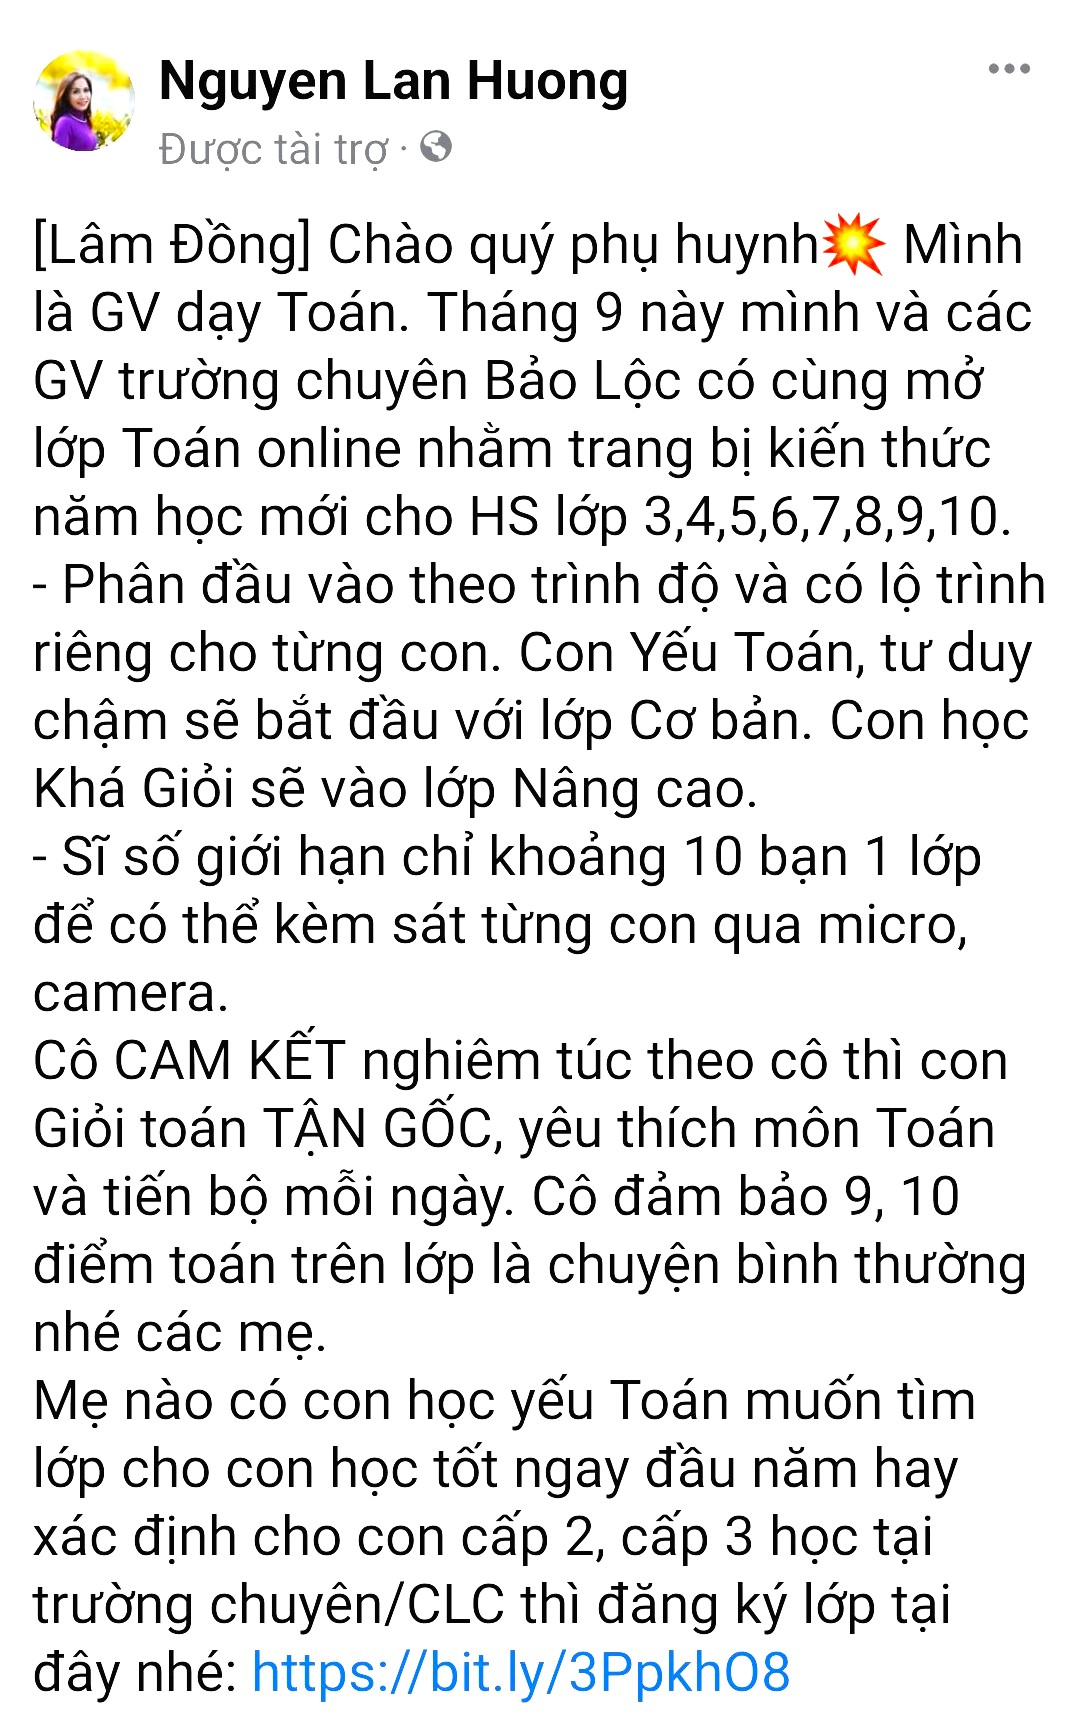 Thầy giáo Nguyễn Vũ Minh Tú - Hiệu trưởng trường THPT Chuyên Bảo Lộc khẳng định thông tin đăng trên tài khoản Facebook Nguyen Lan Huong là không đúng sự thật làm ảnh hưởng đến uy tín nhà trường